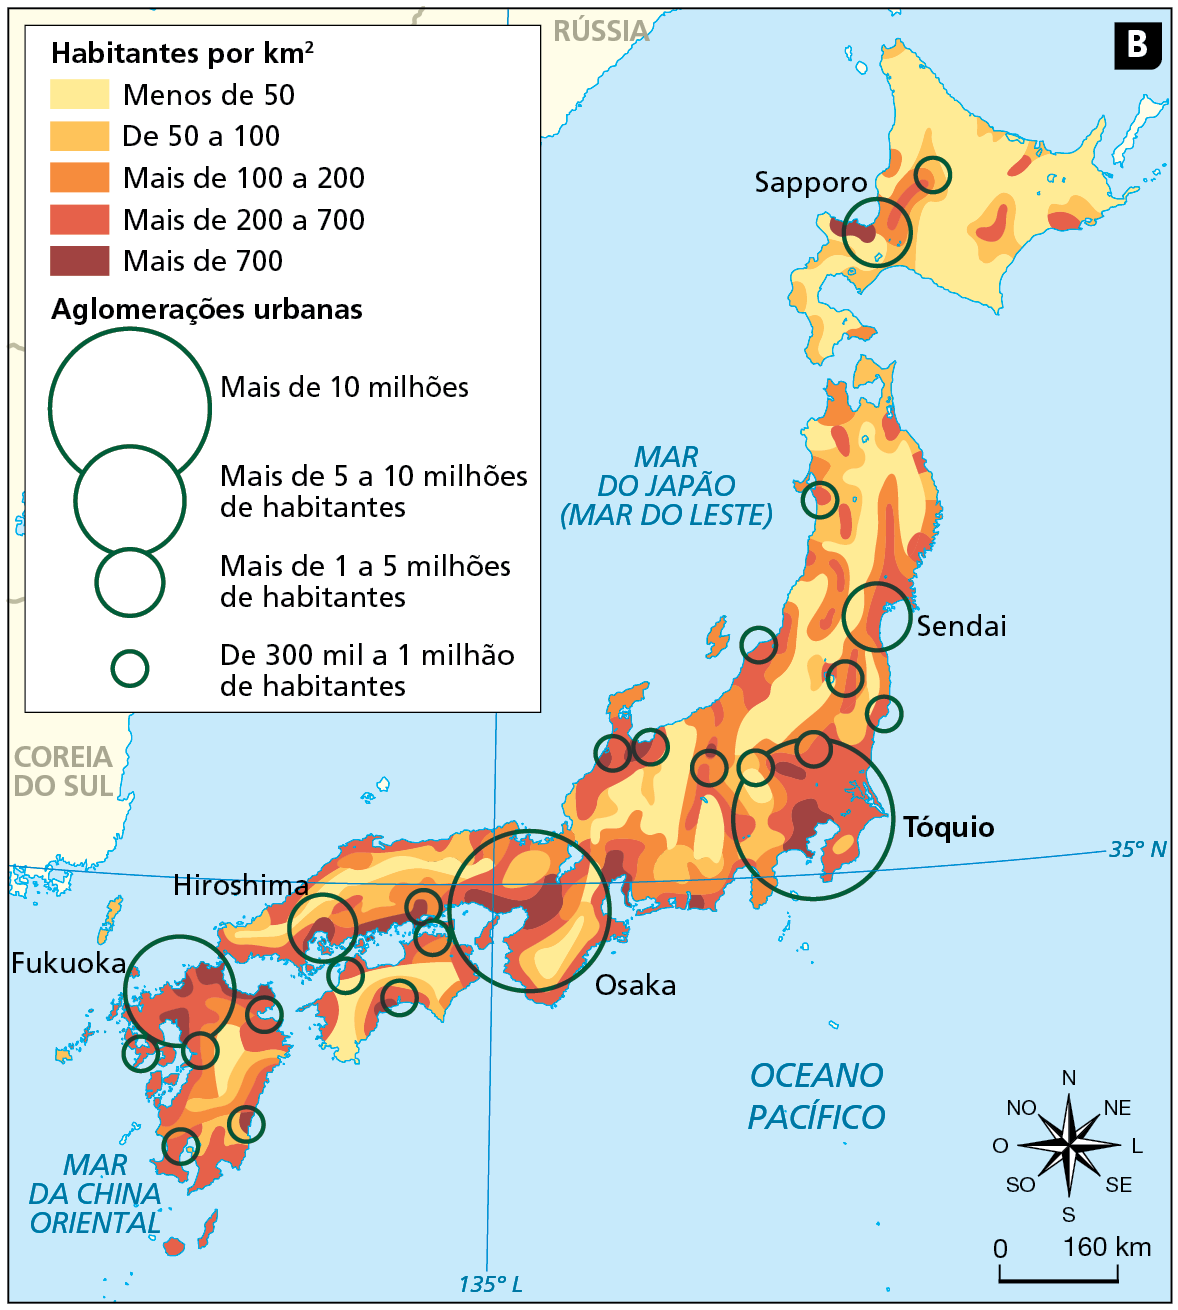 Mapa B. Japão: densidade demográfica e aglomerações urbanas em 2020. Mapa do território japonês onde são especificados os números de habitantes por quilômetro quadrado através do uso de cores. Além disso, as concentrações urbanas são evidenciadas por meio do uso de círculos proporcionais. 
Habitantes por quilômetro quadrado: 
Menos de 50 habitantes (amarelo): predomina na ilha de Hokaido e partes centrais das demais três ilhas. 
De 50 a 100 habitantes (laranja claro): pequenas áreas concentradas próximo às áreas centrais das quatro ilhas. 
Mais de 100 a 200 habitantes (laranja escuro): áreas concentradas próximo às áreas litorâneas das quatro ilhas. 
Mais de 200 a 700 habitantes (vermelho): localizadas nas porções litorâneas das quatro ilhas. 
Mais de 700 habitantes (marrom): em regiões litorâneas. Sul de Hokkaido, sudeste e sul de Honshu e norte de Kyushu.
Aglomerações urbanas: Mais de 10 milhões de habitantes: sudeste e sul de Honshu, nas cidades de Tóquio e Osaka.
Mais de 5 a 10 milhões de habitantes: Norte de Kyushu, cidade de Fukuoka. 
Mais de 1 a 5 milhões de habitantes: sul e norte de Honshu, e sul de Hokkaido. Cidades de Hiroshima, Sendai e Sapporo. 
De 300 mil a 1 milhão de habitantes: espalhados ao longo de todo o território japonês.
Abaixo, rosa dos ventos e escala de 0 a 160 quilômetros.